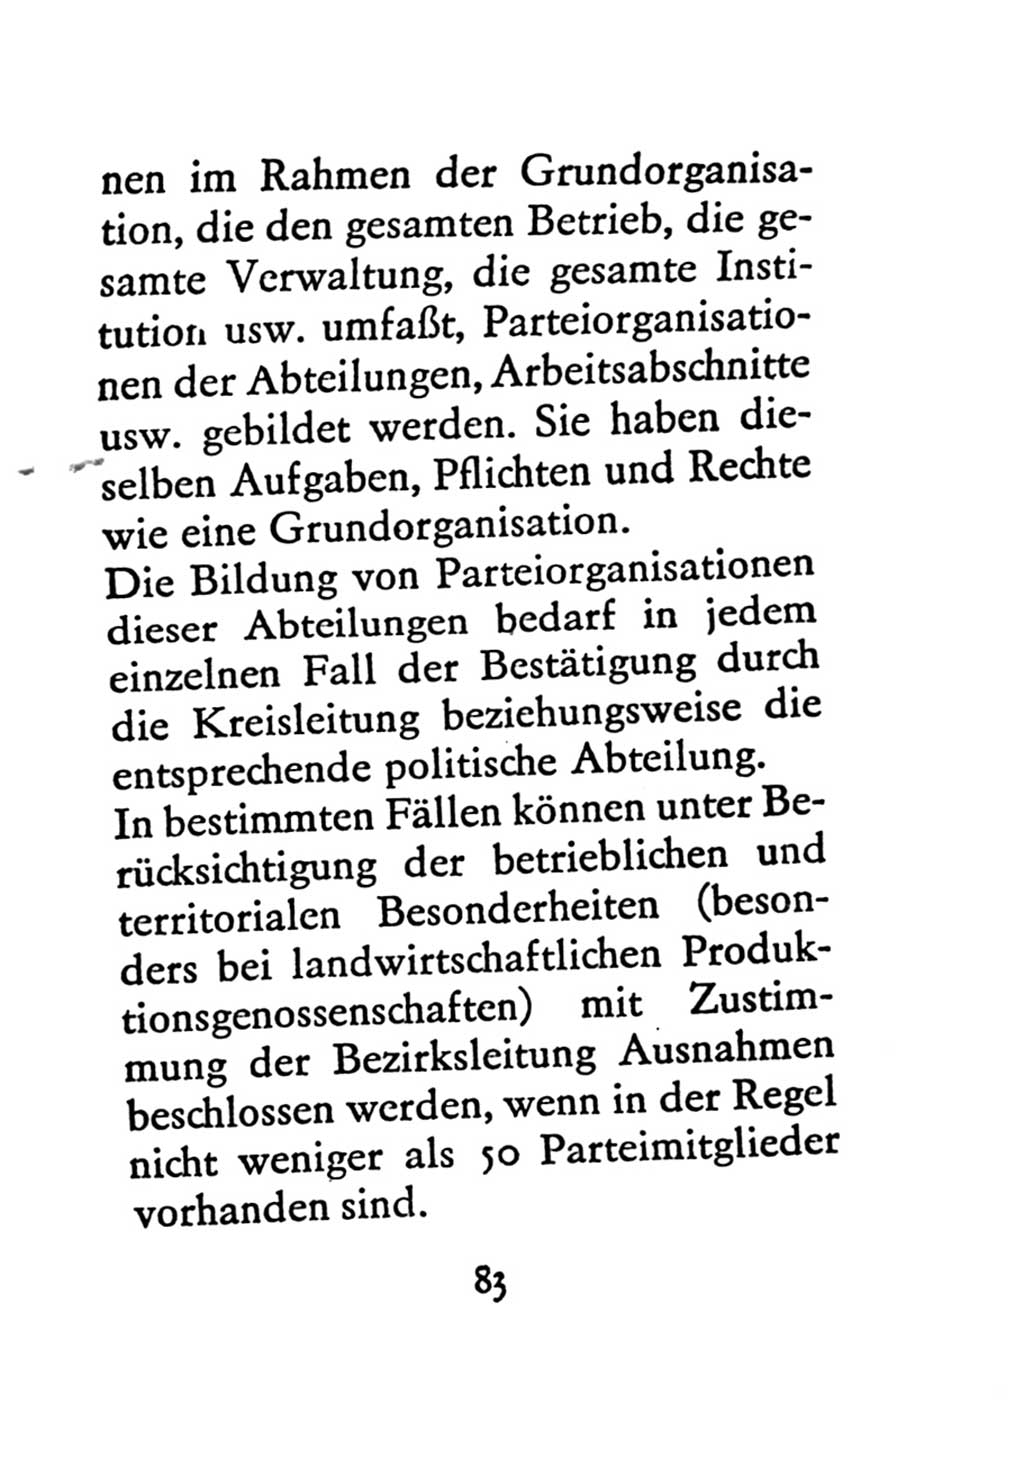 Statut der Sozialistischen Einheitspartei Deutschlands (SED) 1971, Seite 83 (St. SED DDR 1971, S. 83)